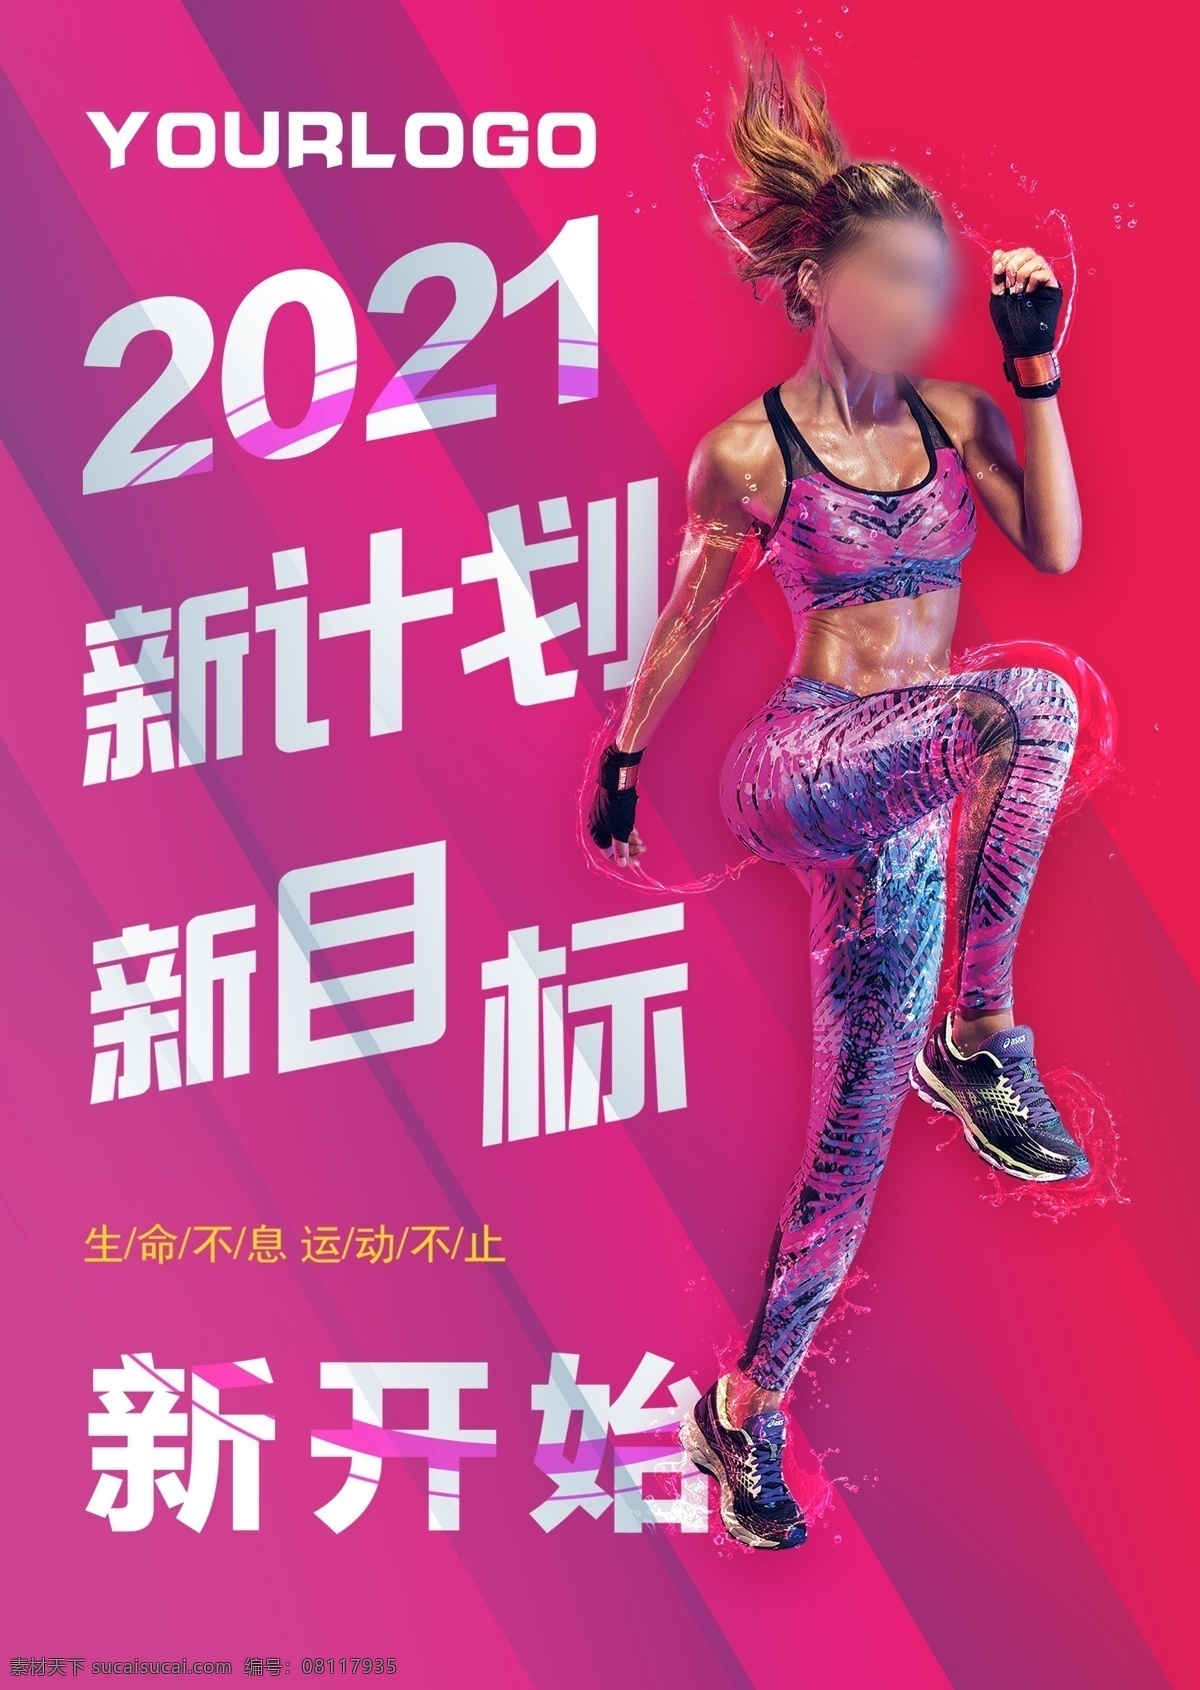 运动计划图片 运动计划 运动 健身 动感健身 动感 时尚 运动目标 运动封面 健身封面 健身海报 海报 宣传单